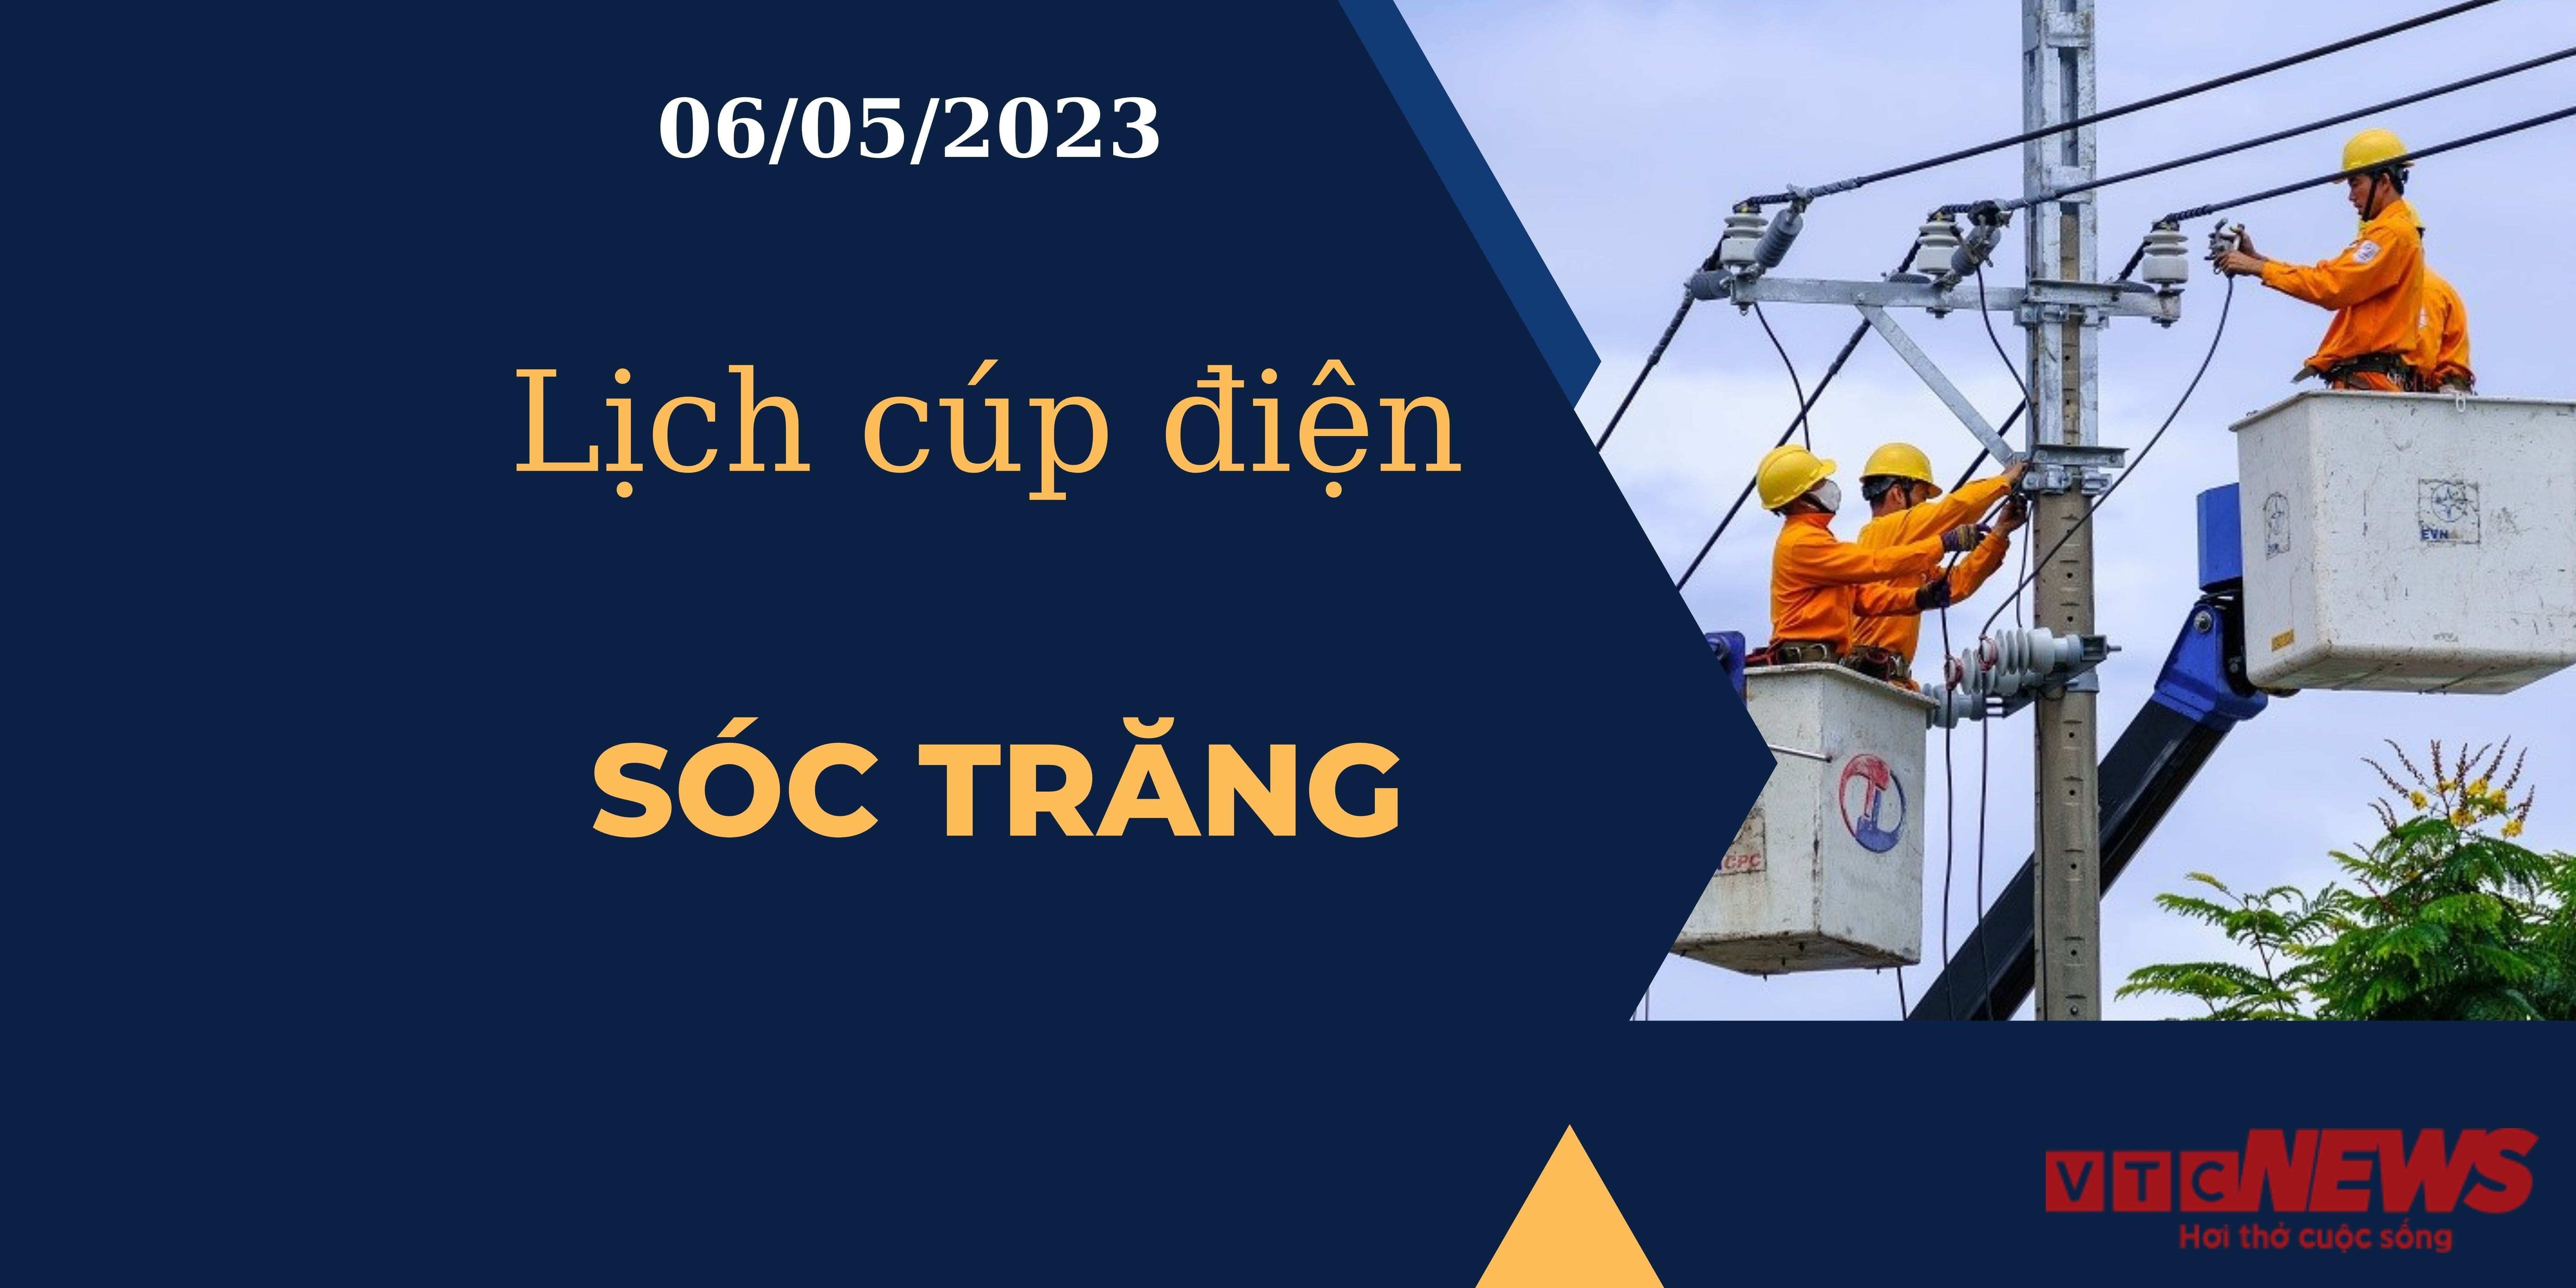 Lịch cúp điện hôm nay tại  Sóc Trăng ngày 06/05/2023 - 1